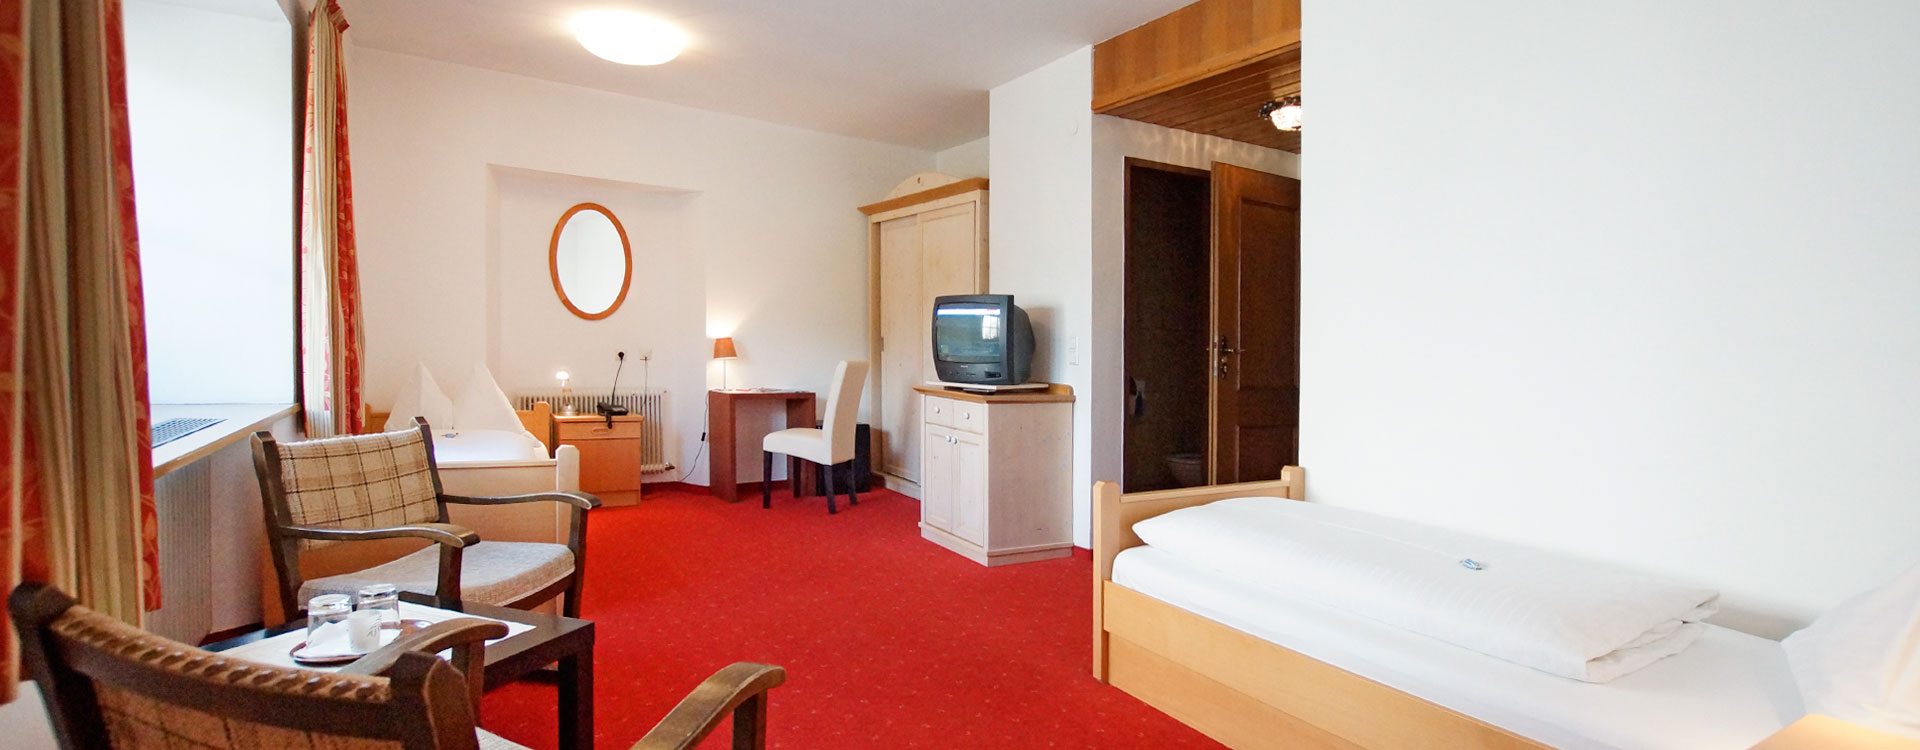 Preber – Zimmer in Mauterndorf, Lungau - 3 Sterne Hotel Neuwirt